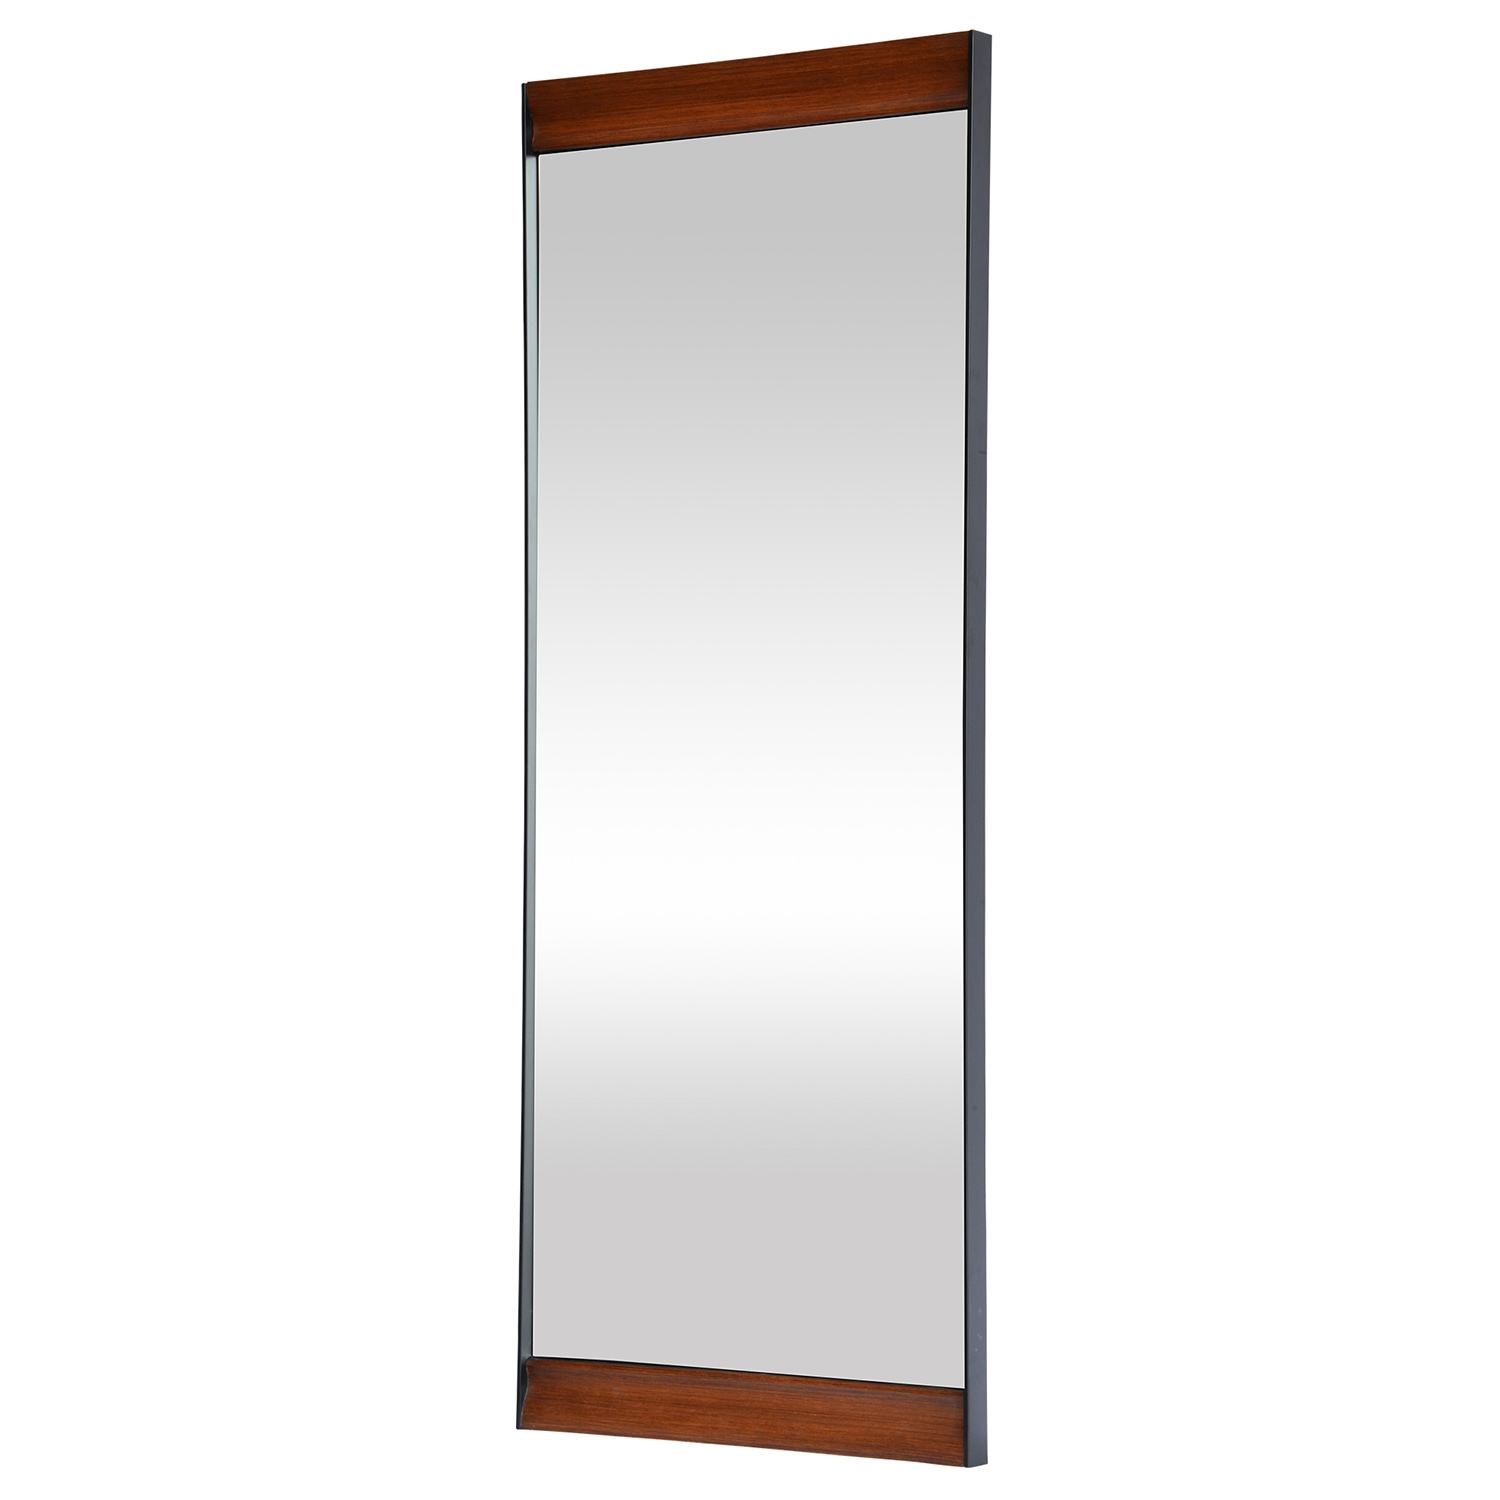 Ren-Wil Marie Mirror - Stainless Steel/Wood